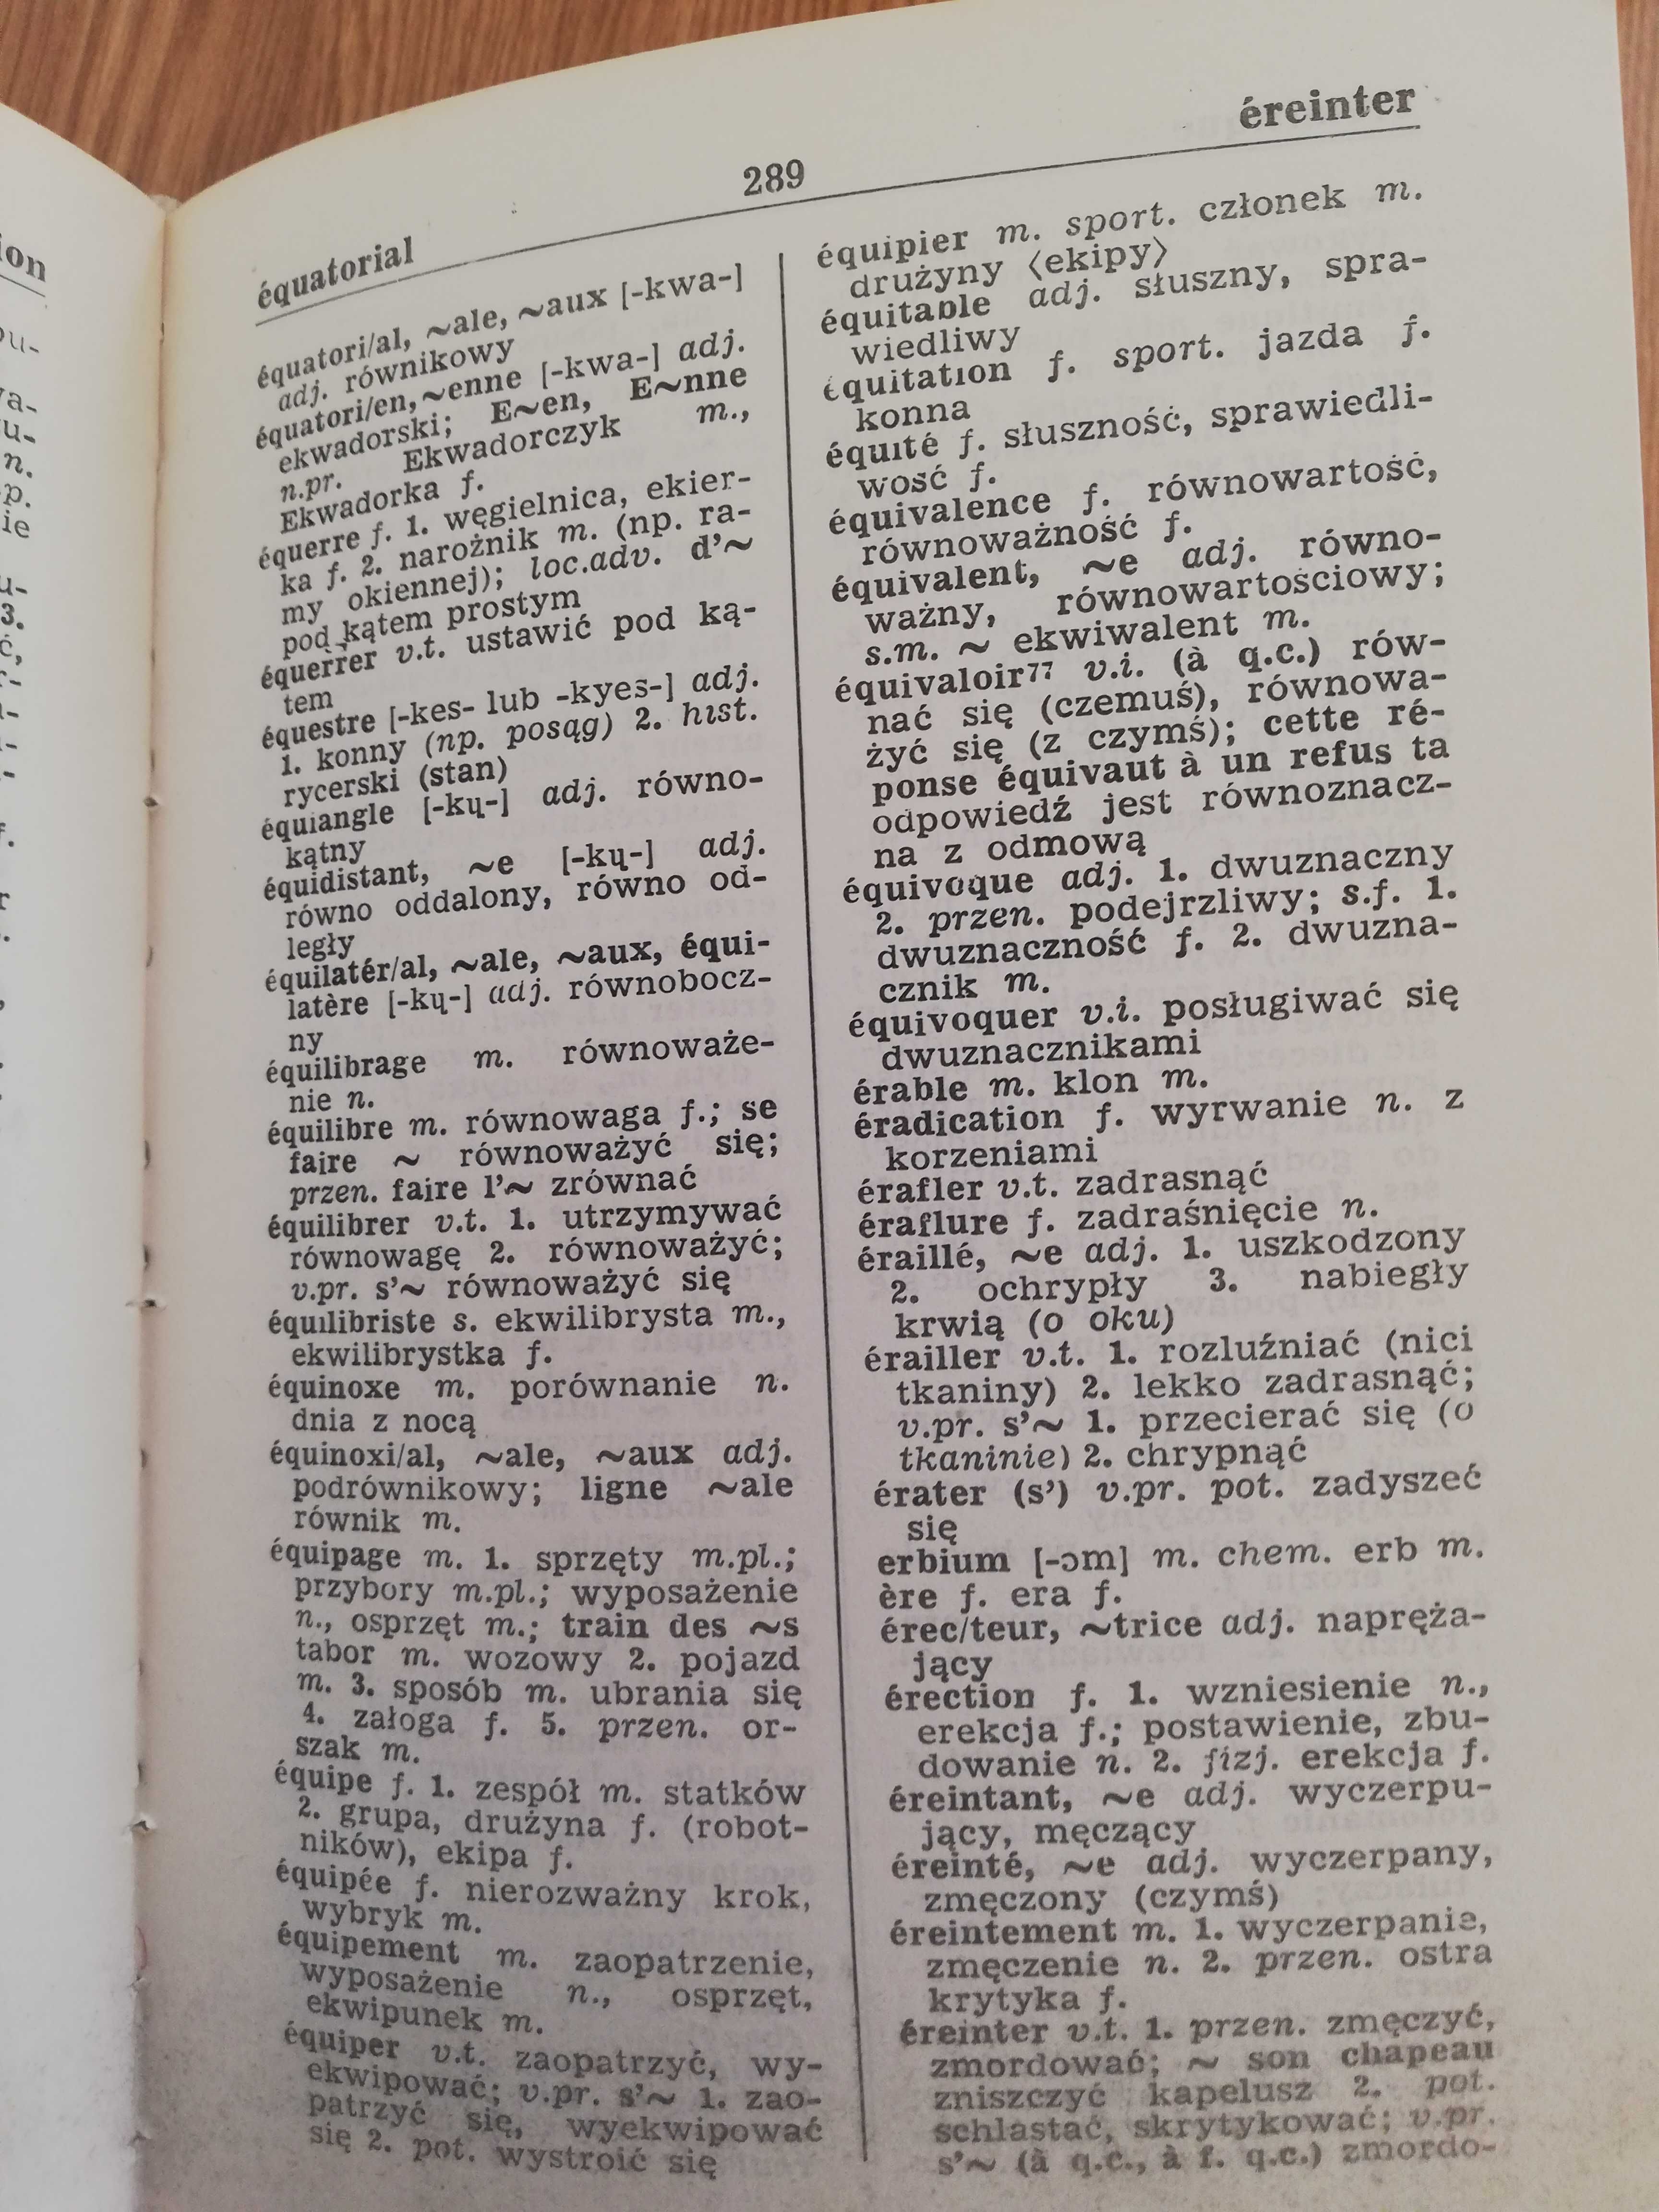 Słownik francusko-polski - Wiedza Powszechna 1987 r. 60 tys. wyrazów